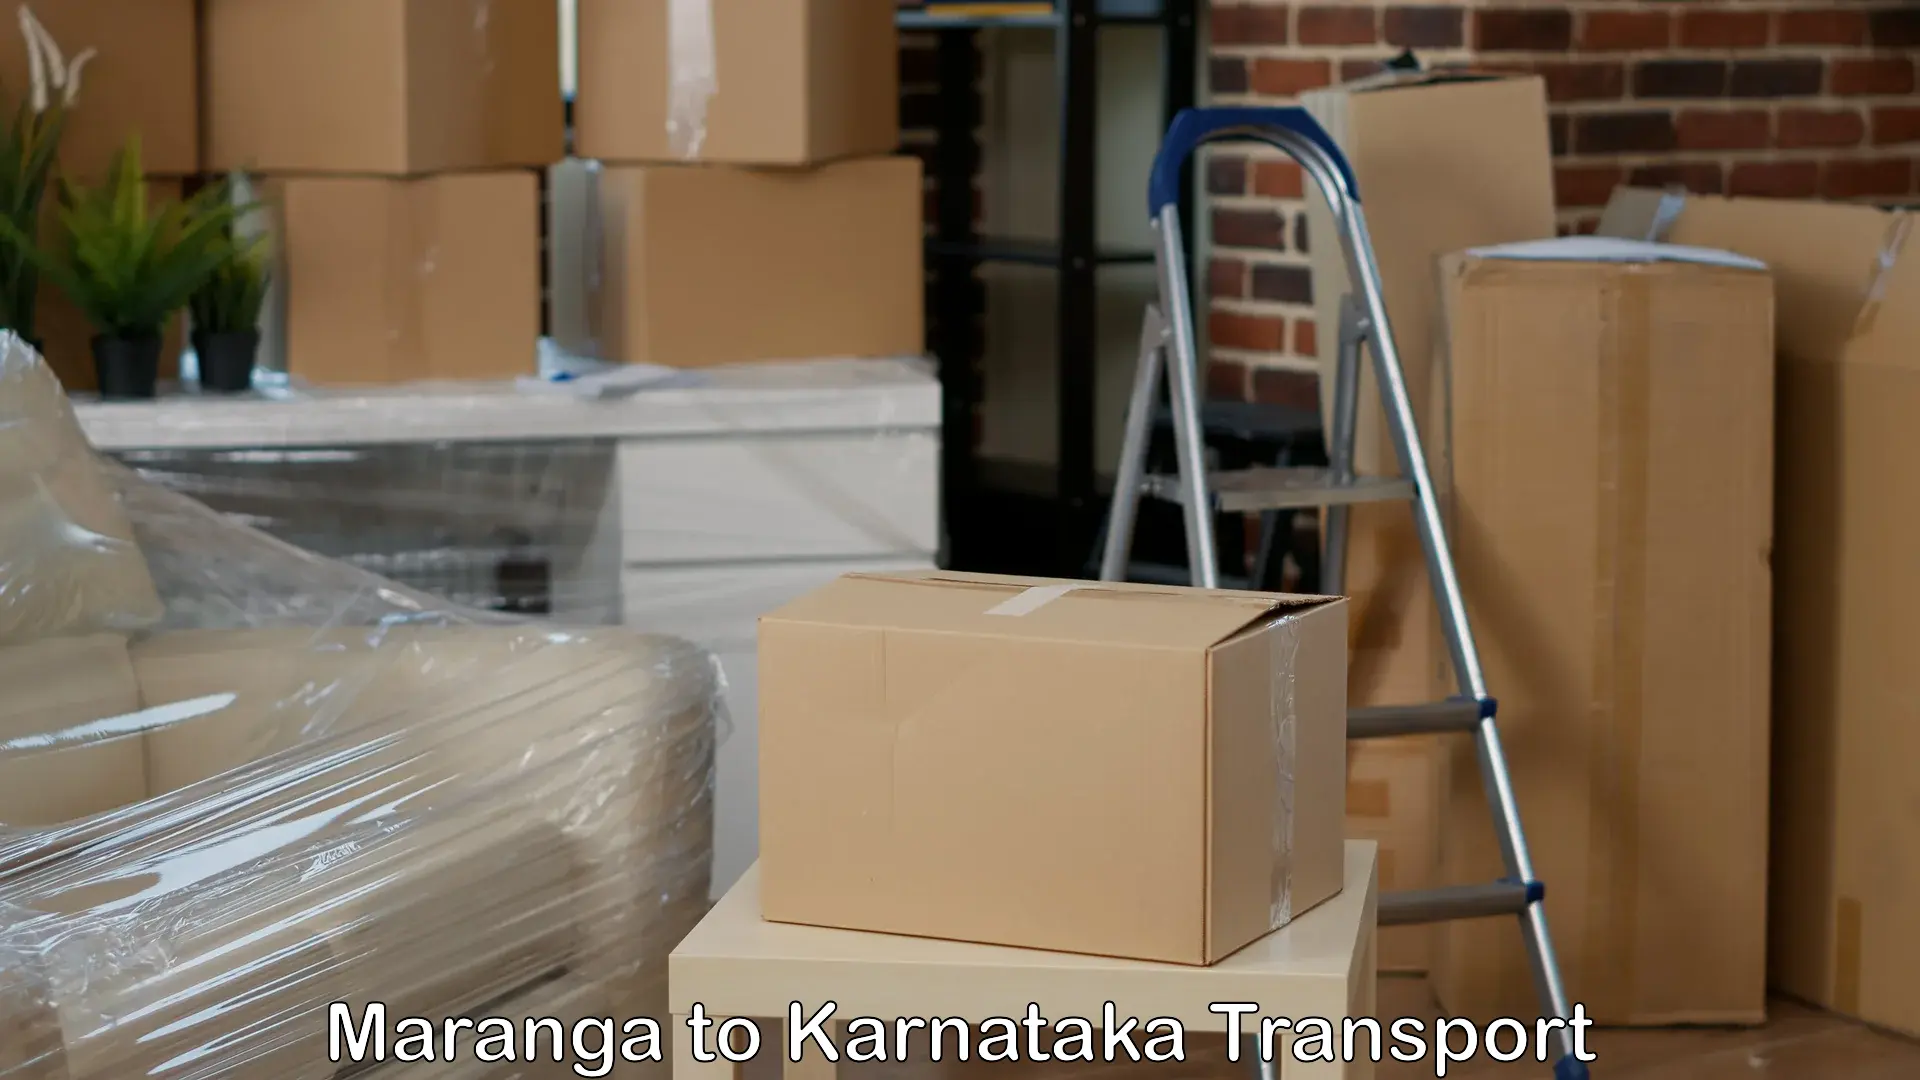 Land transport services Maranga to Kanjarakatte